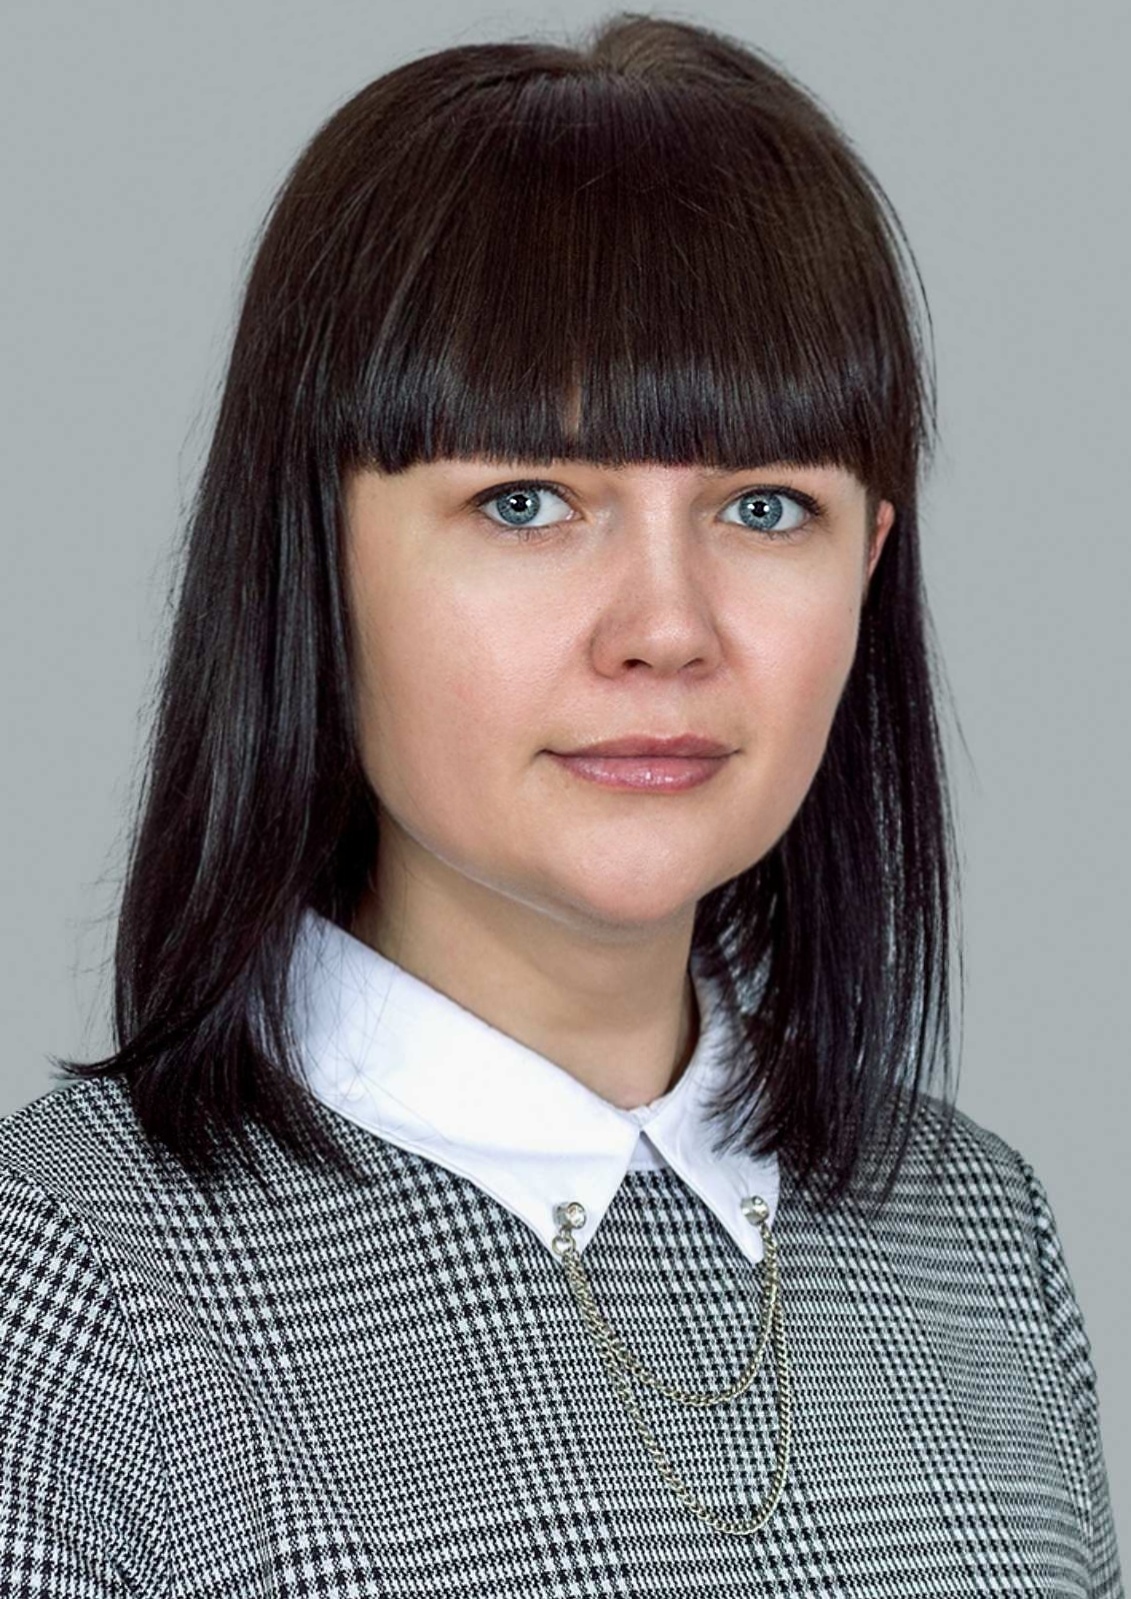 Педагогический работник Вербич Анастасия Михайловна.